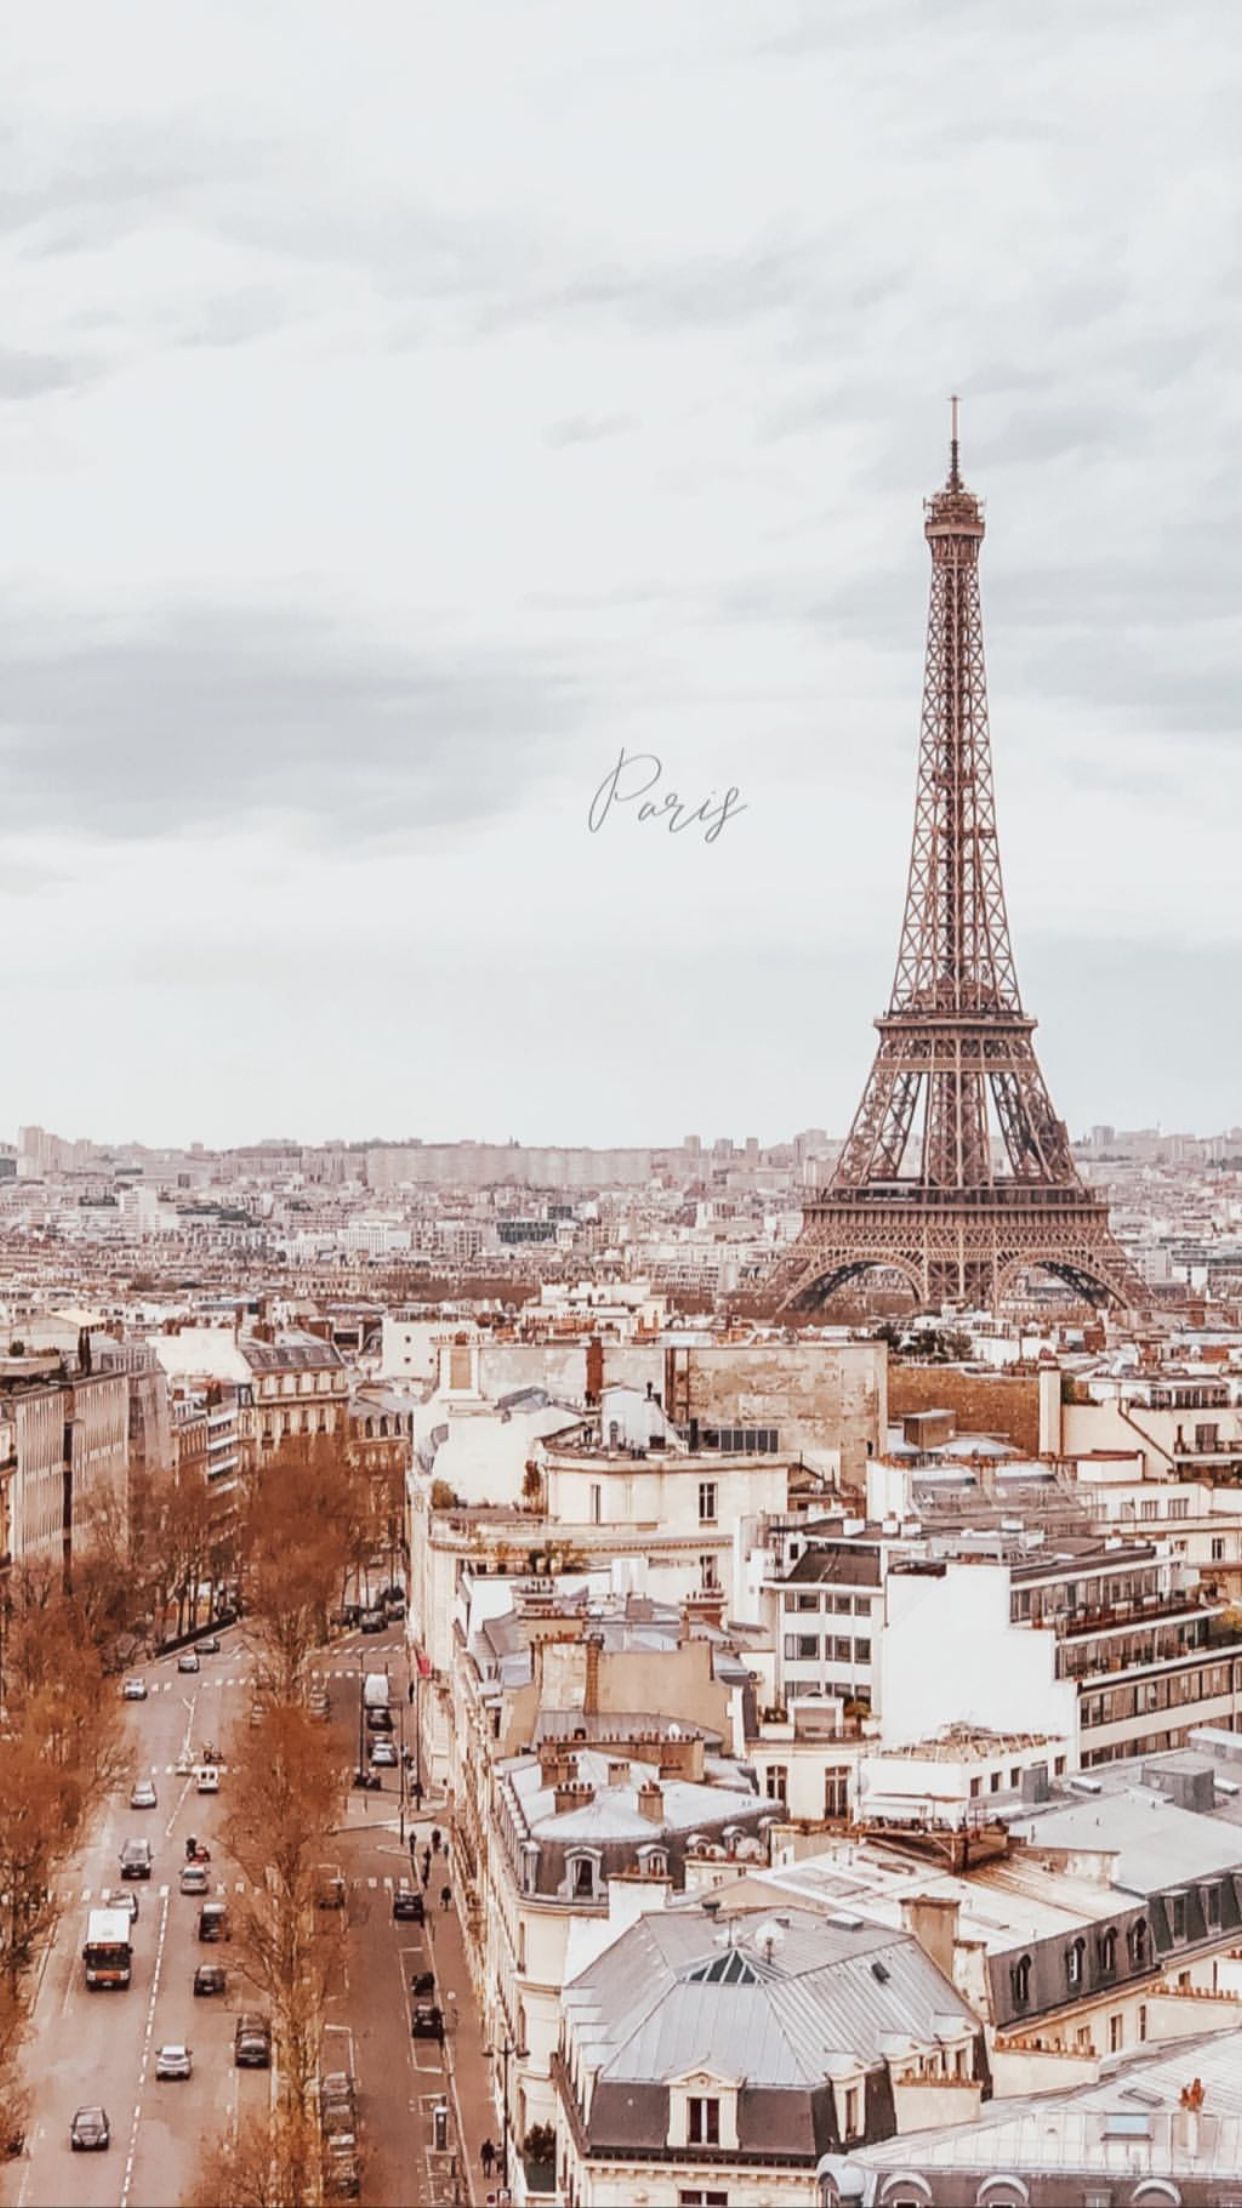 Paris wallpaper for phone and desktop backgrounds. Paris aesthetic for phone backgrounds. - Architecture, Eiffel Tower, Paris